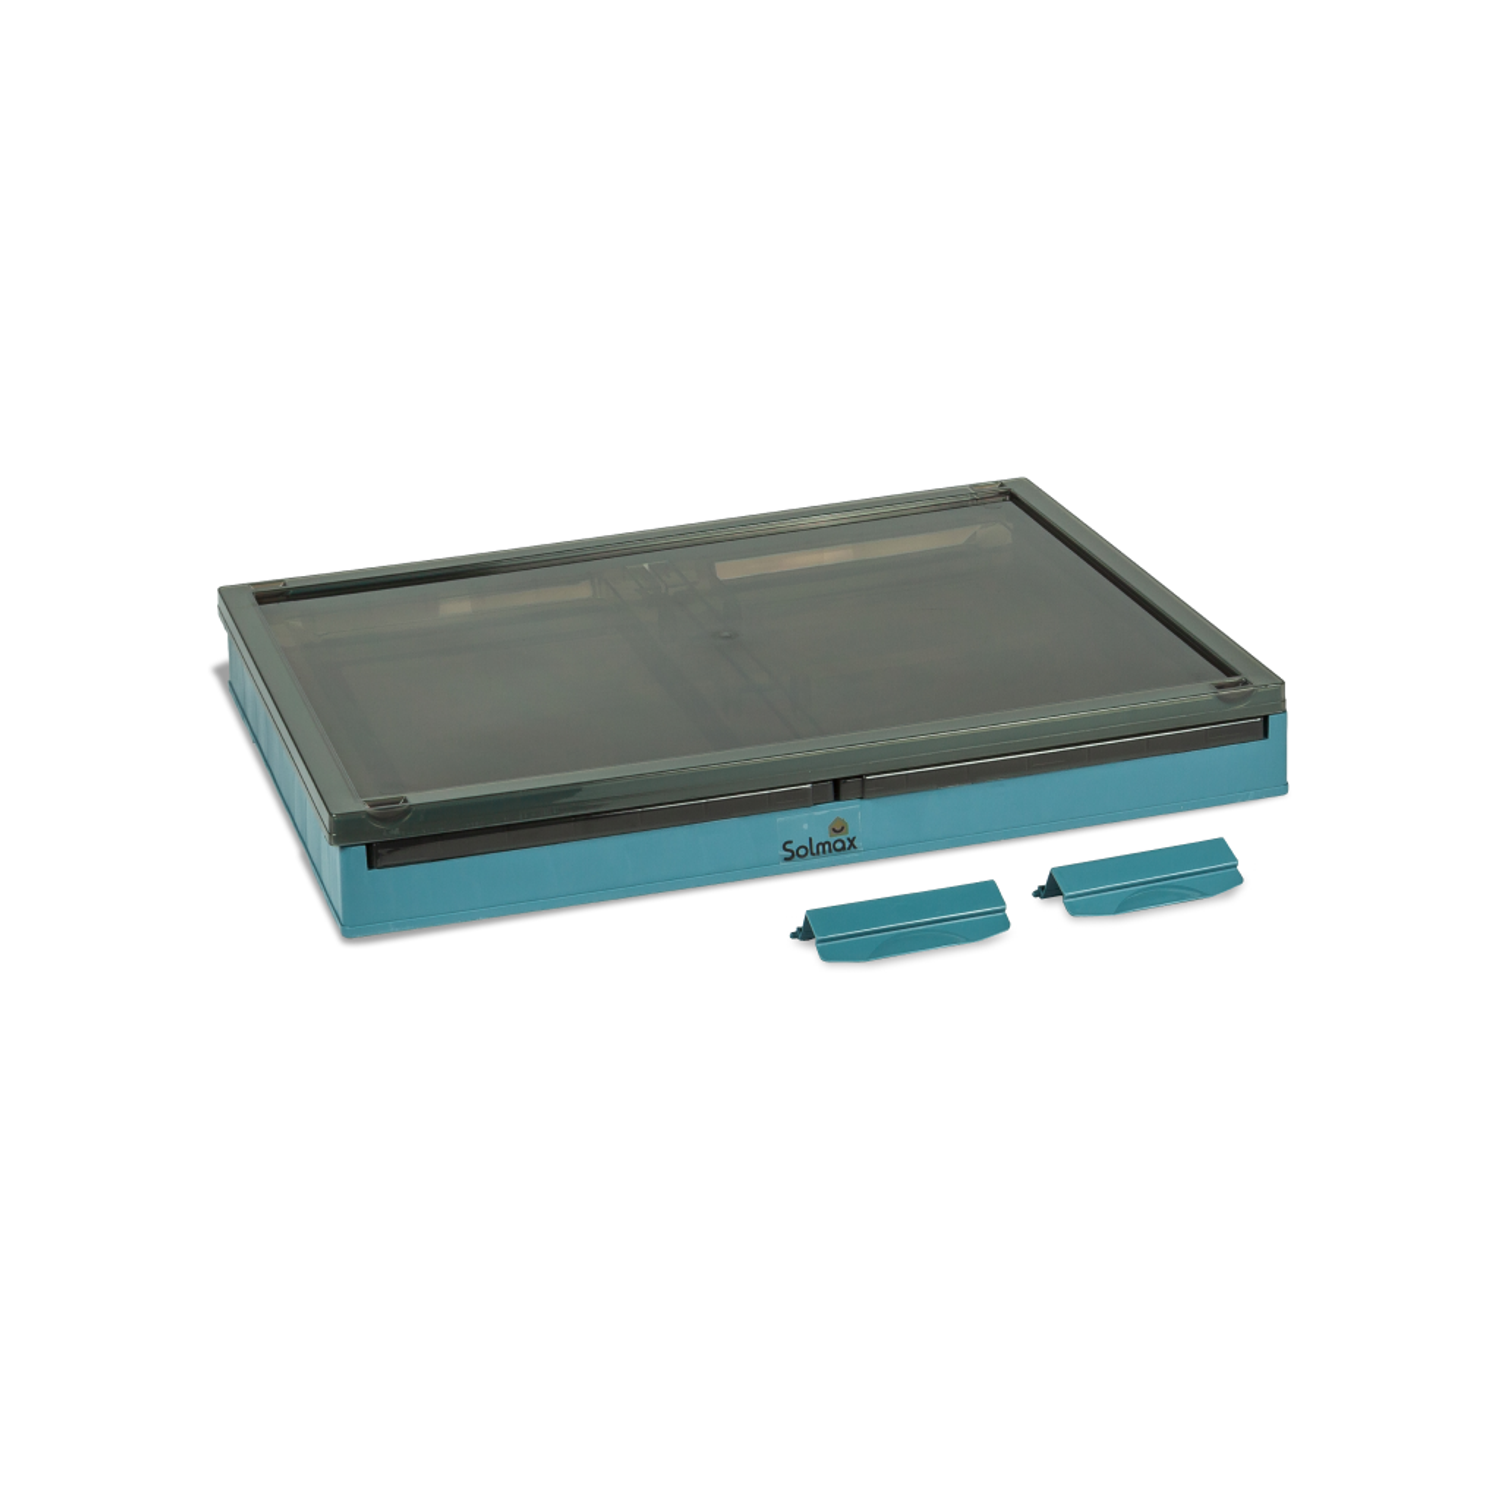 Ящик для хранения вещей Solmax прозрачный контейнер с крышкой на колесах 60х42х35 голубой - фото 4